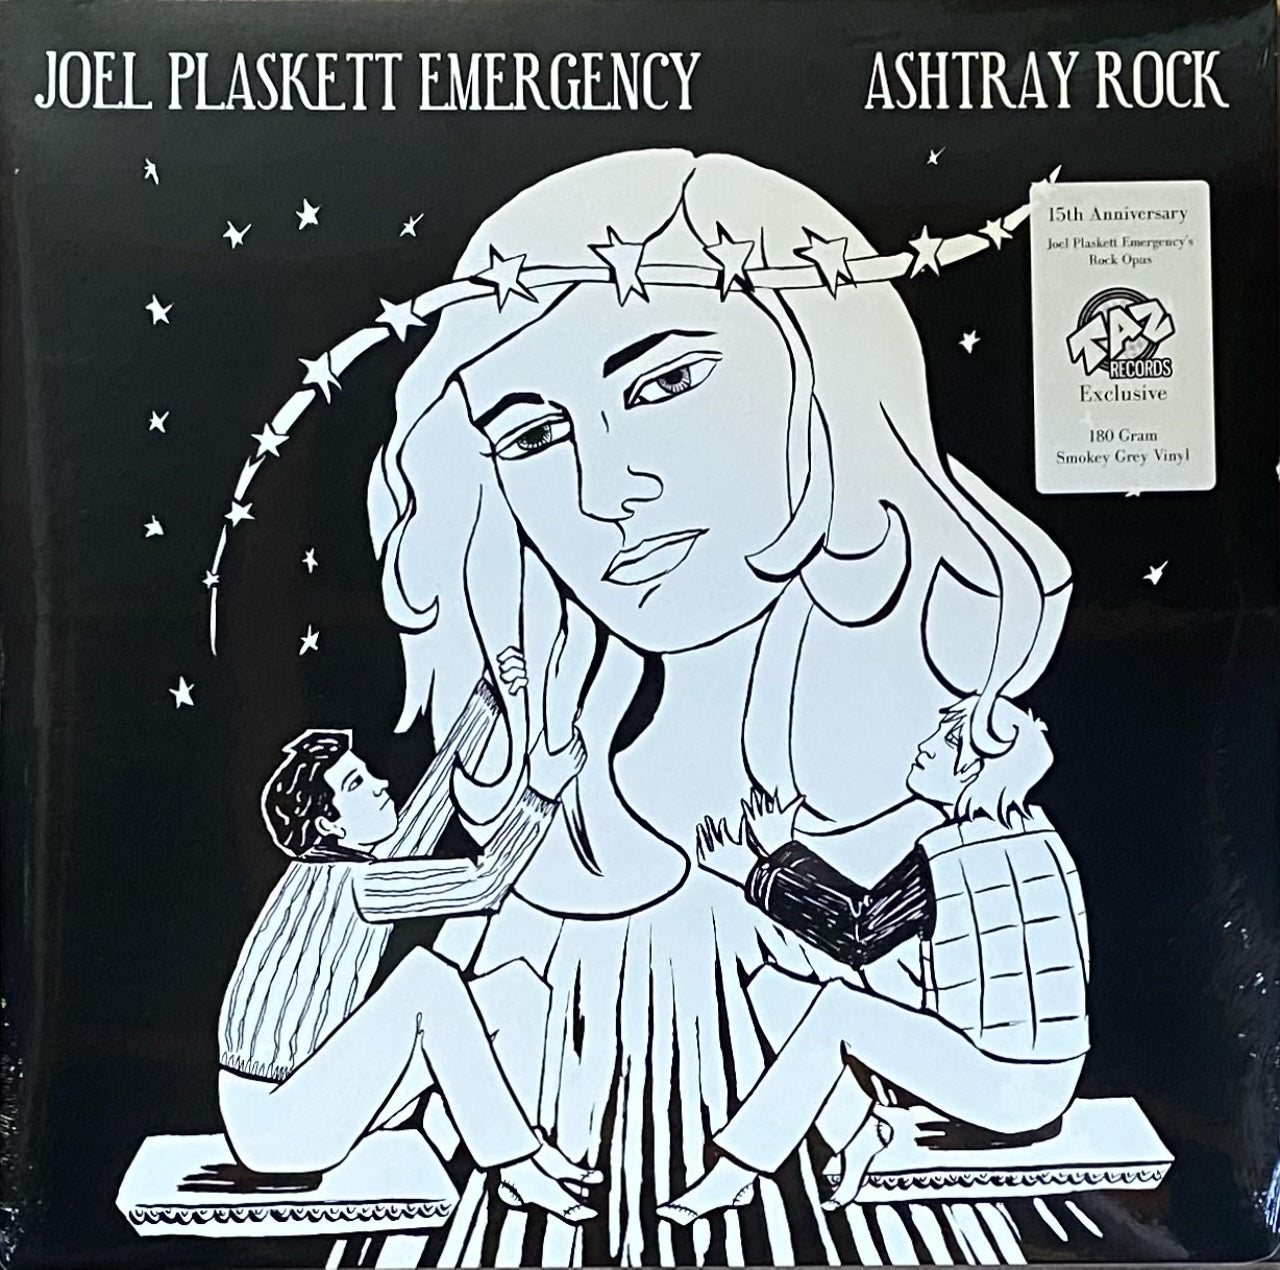 Joel Plaskett Emergency/Ashtray Rock (Smokey Grey Vinyl) [LP]